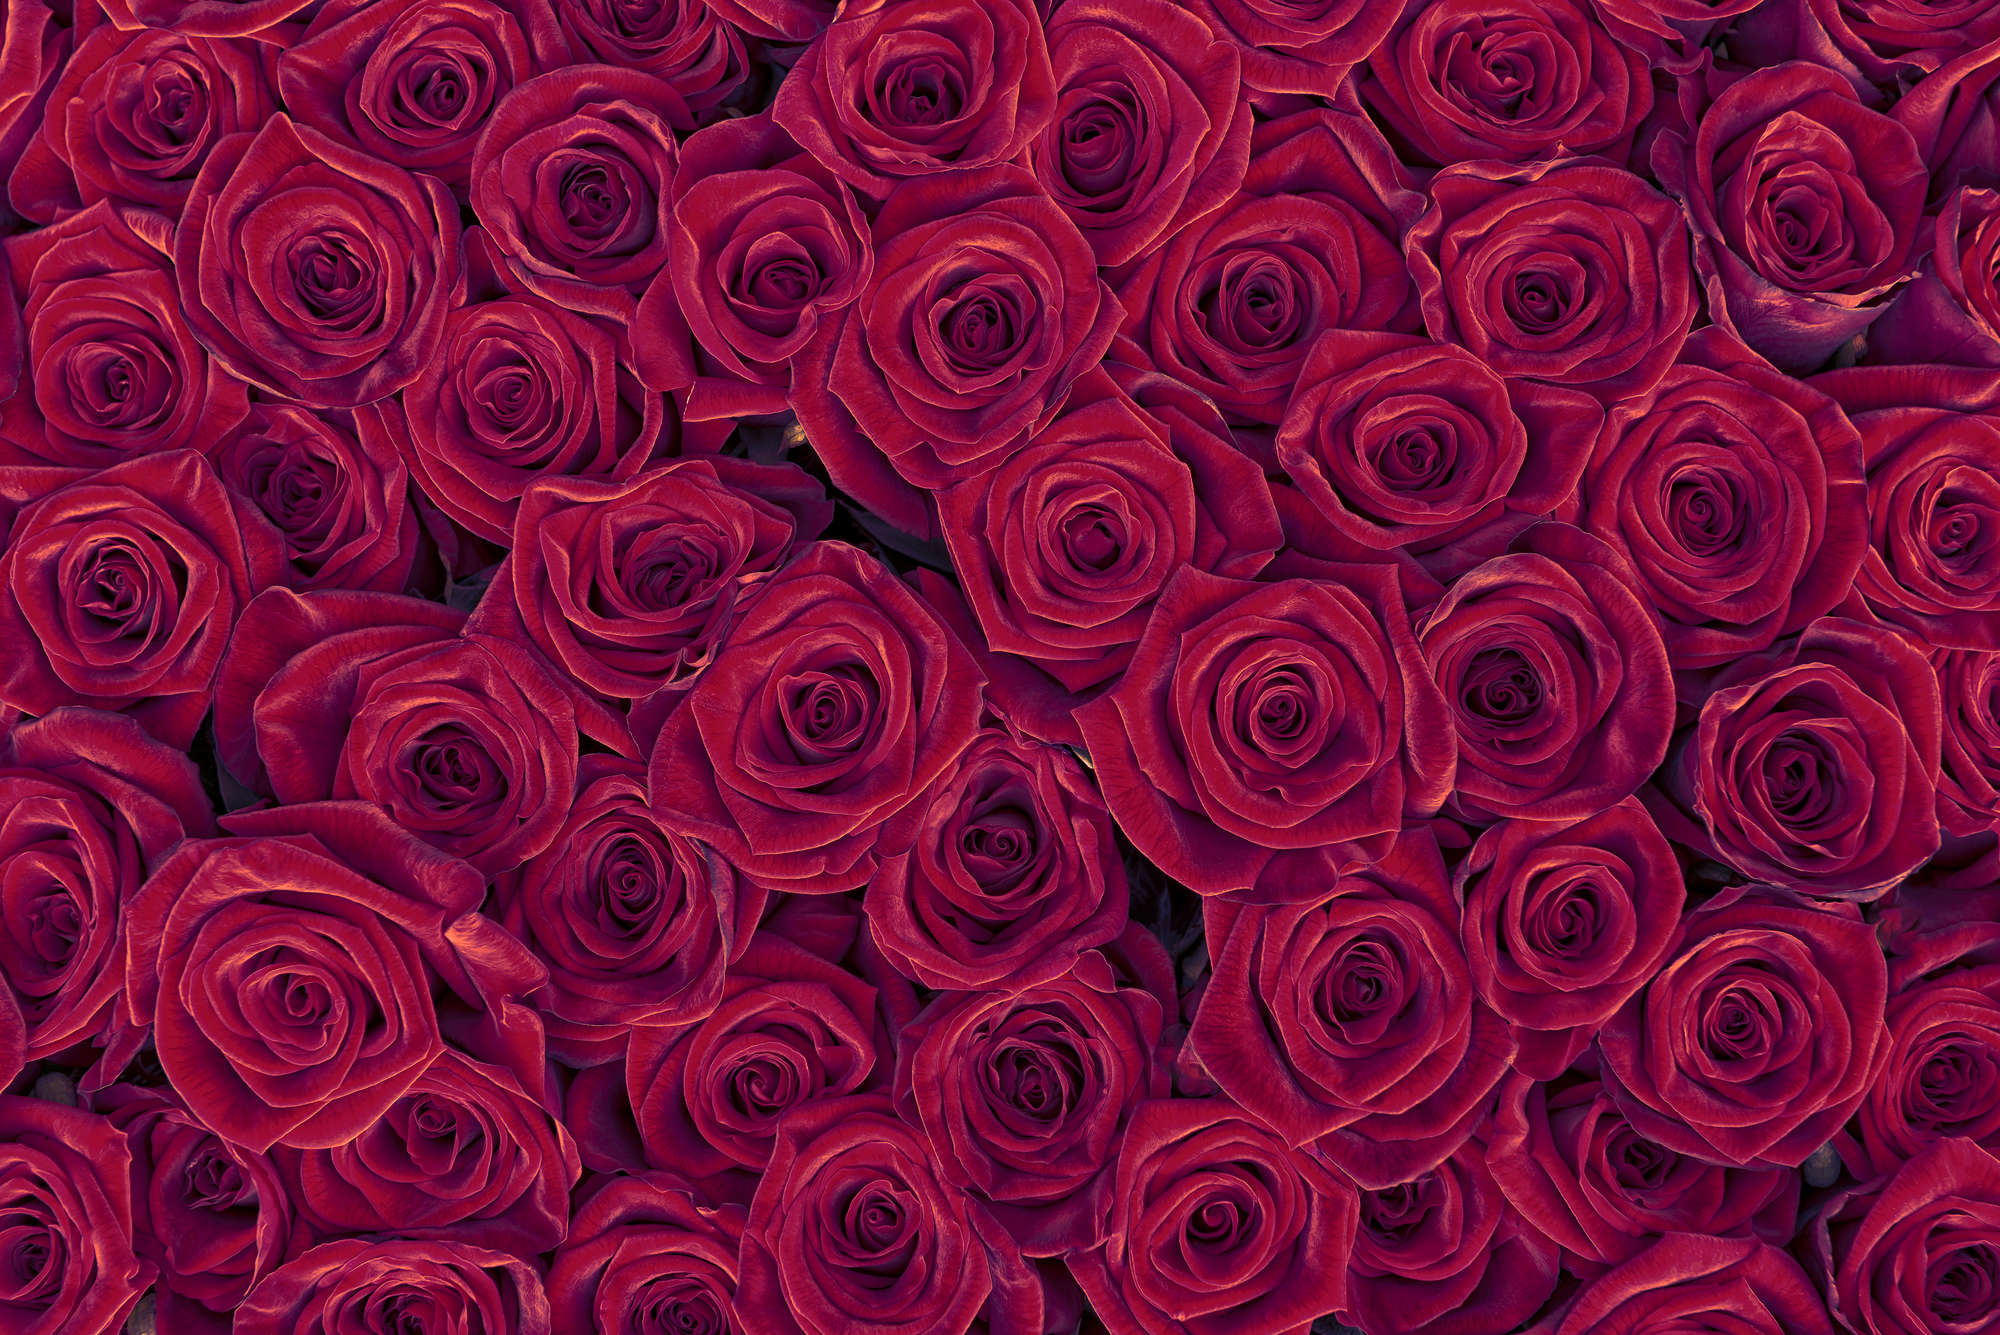             Papier peint végétal roses rouges sur intissé lisse premium
        